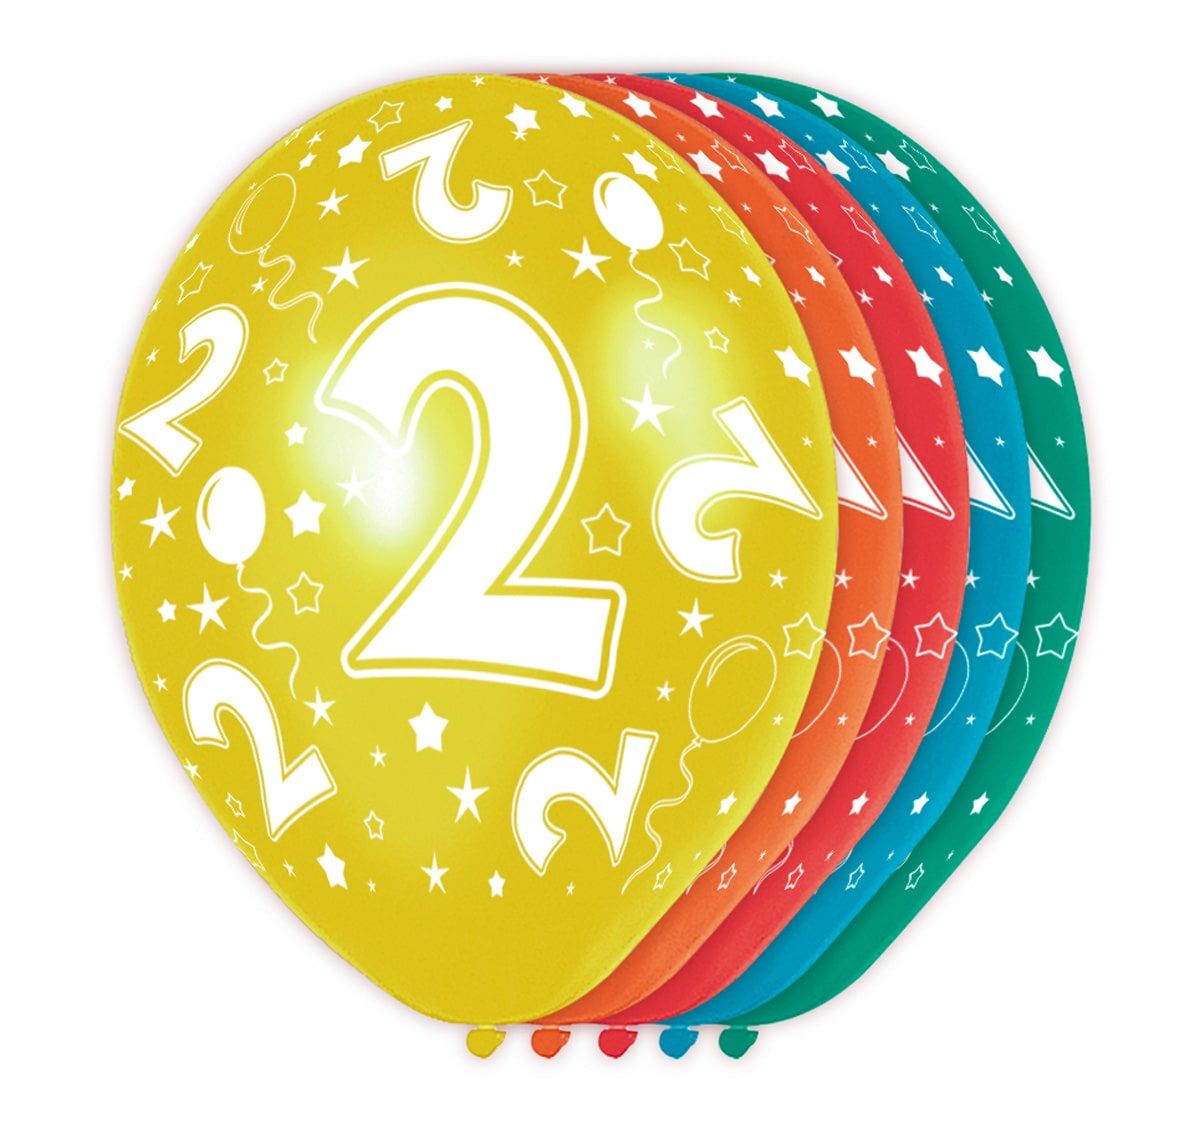 Feestelijke verjaardag ballonnen 2 jaar